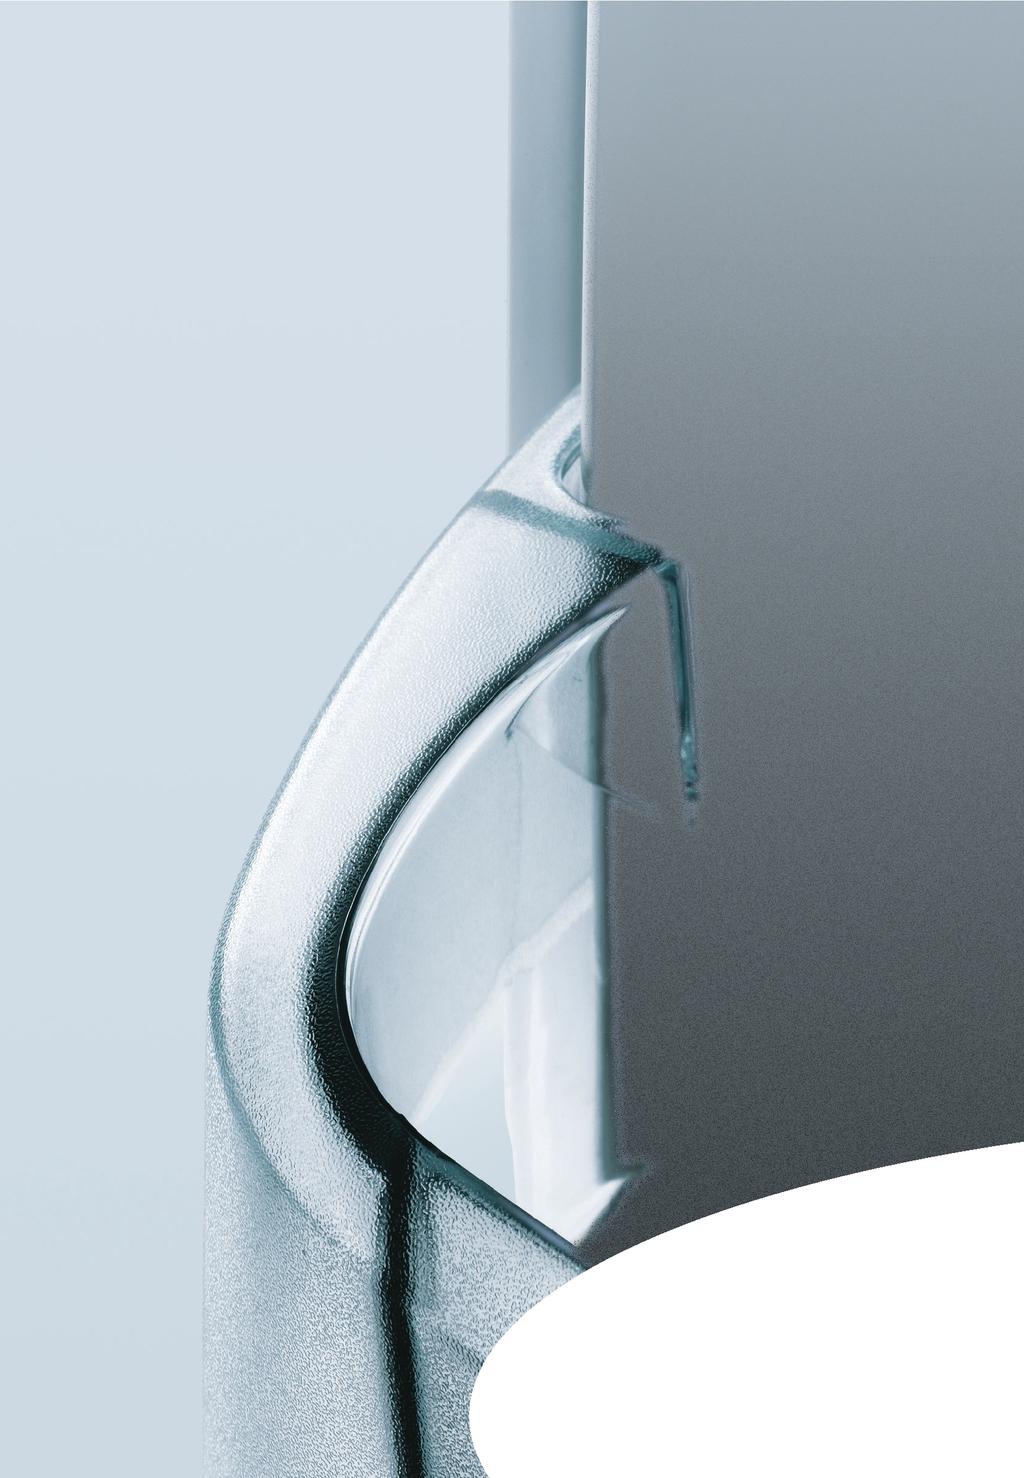 NO-FROST REFRIGERATOR Freezer-Fridge Instruction booklet RÉFRIGÉRATEUR A FROID VENTILE Réfrigérateur - Congélateur Guide d utilisation NO FROST FRIGORÍFICO Congelador -